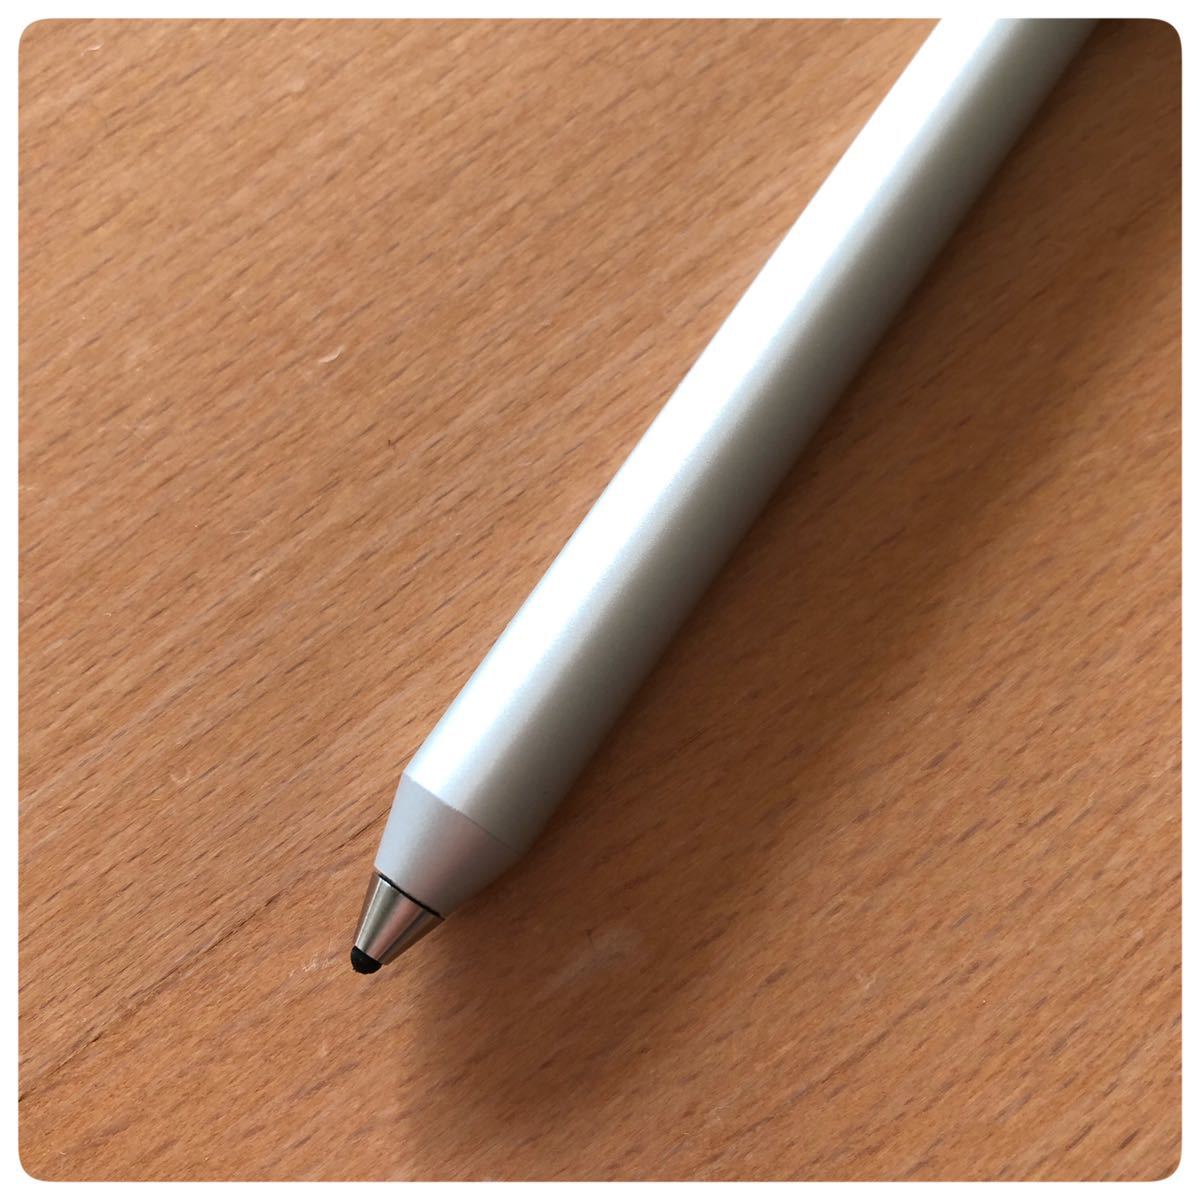 【ジャンク】スタイラスペン タッチペン iPadとiPhoneに適用する タブレット スマートフォン対応 極細 充電式 高感度 _画像3